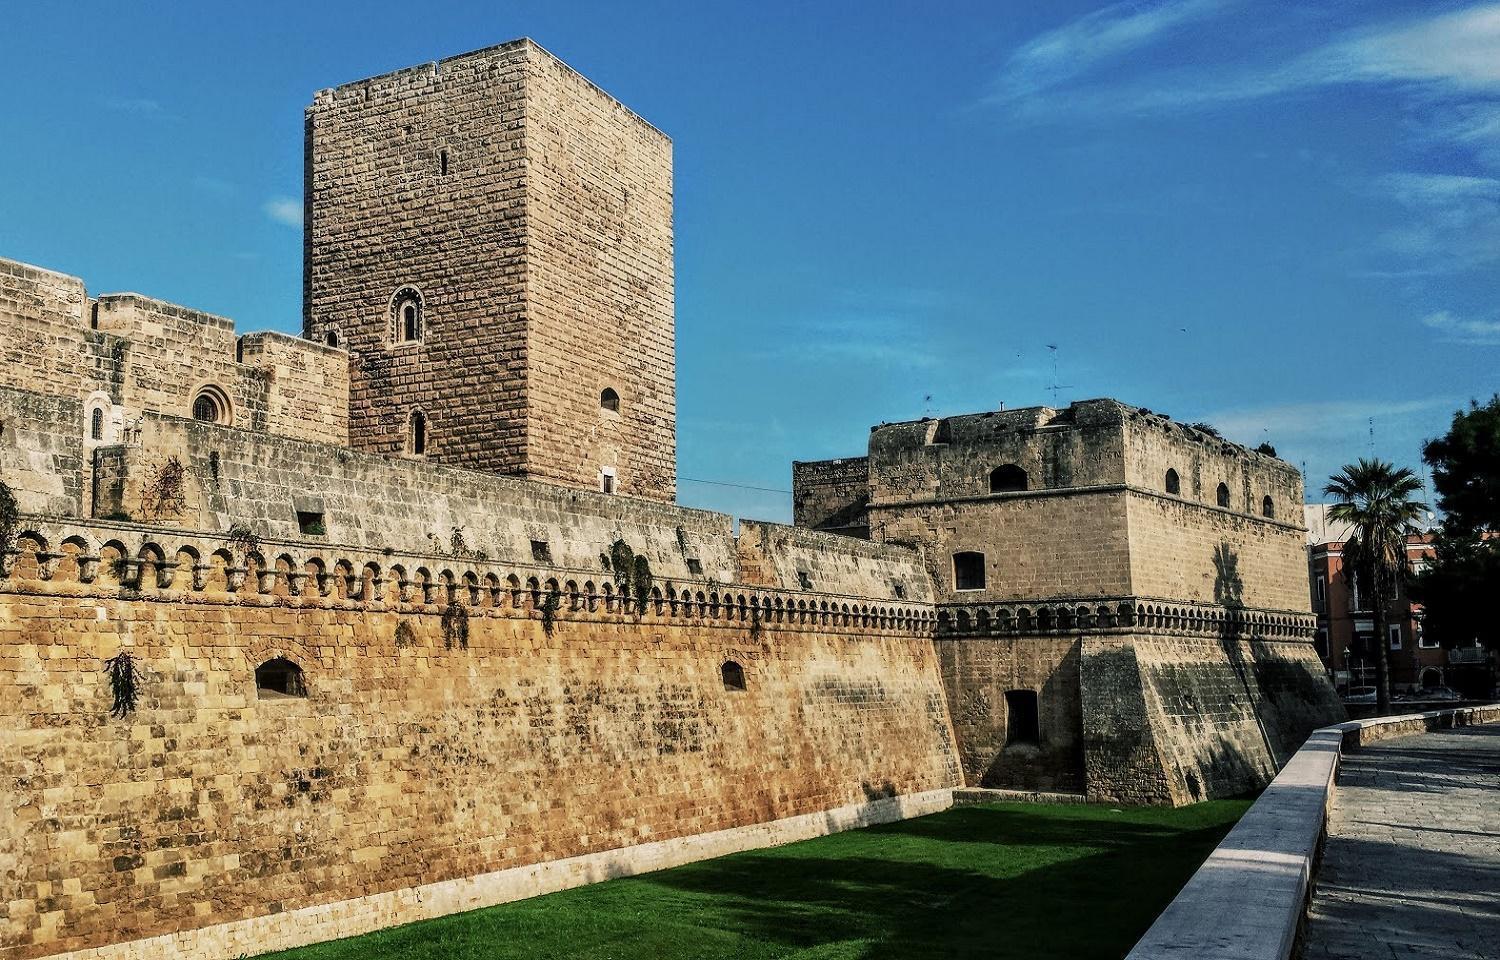 Il castello normanno-svevo di Bari, sede della mostra